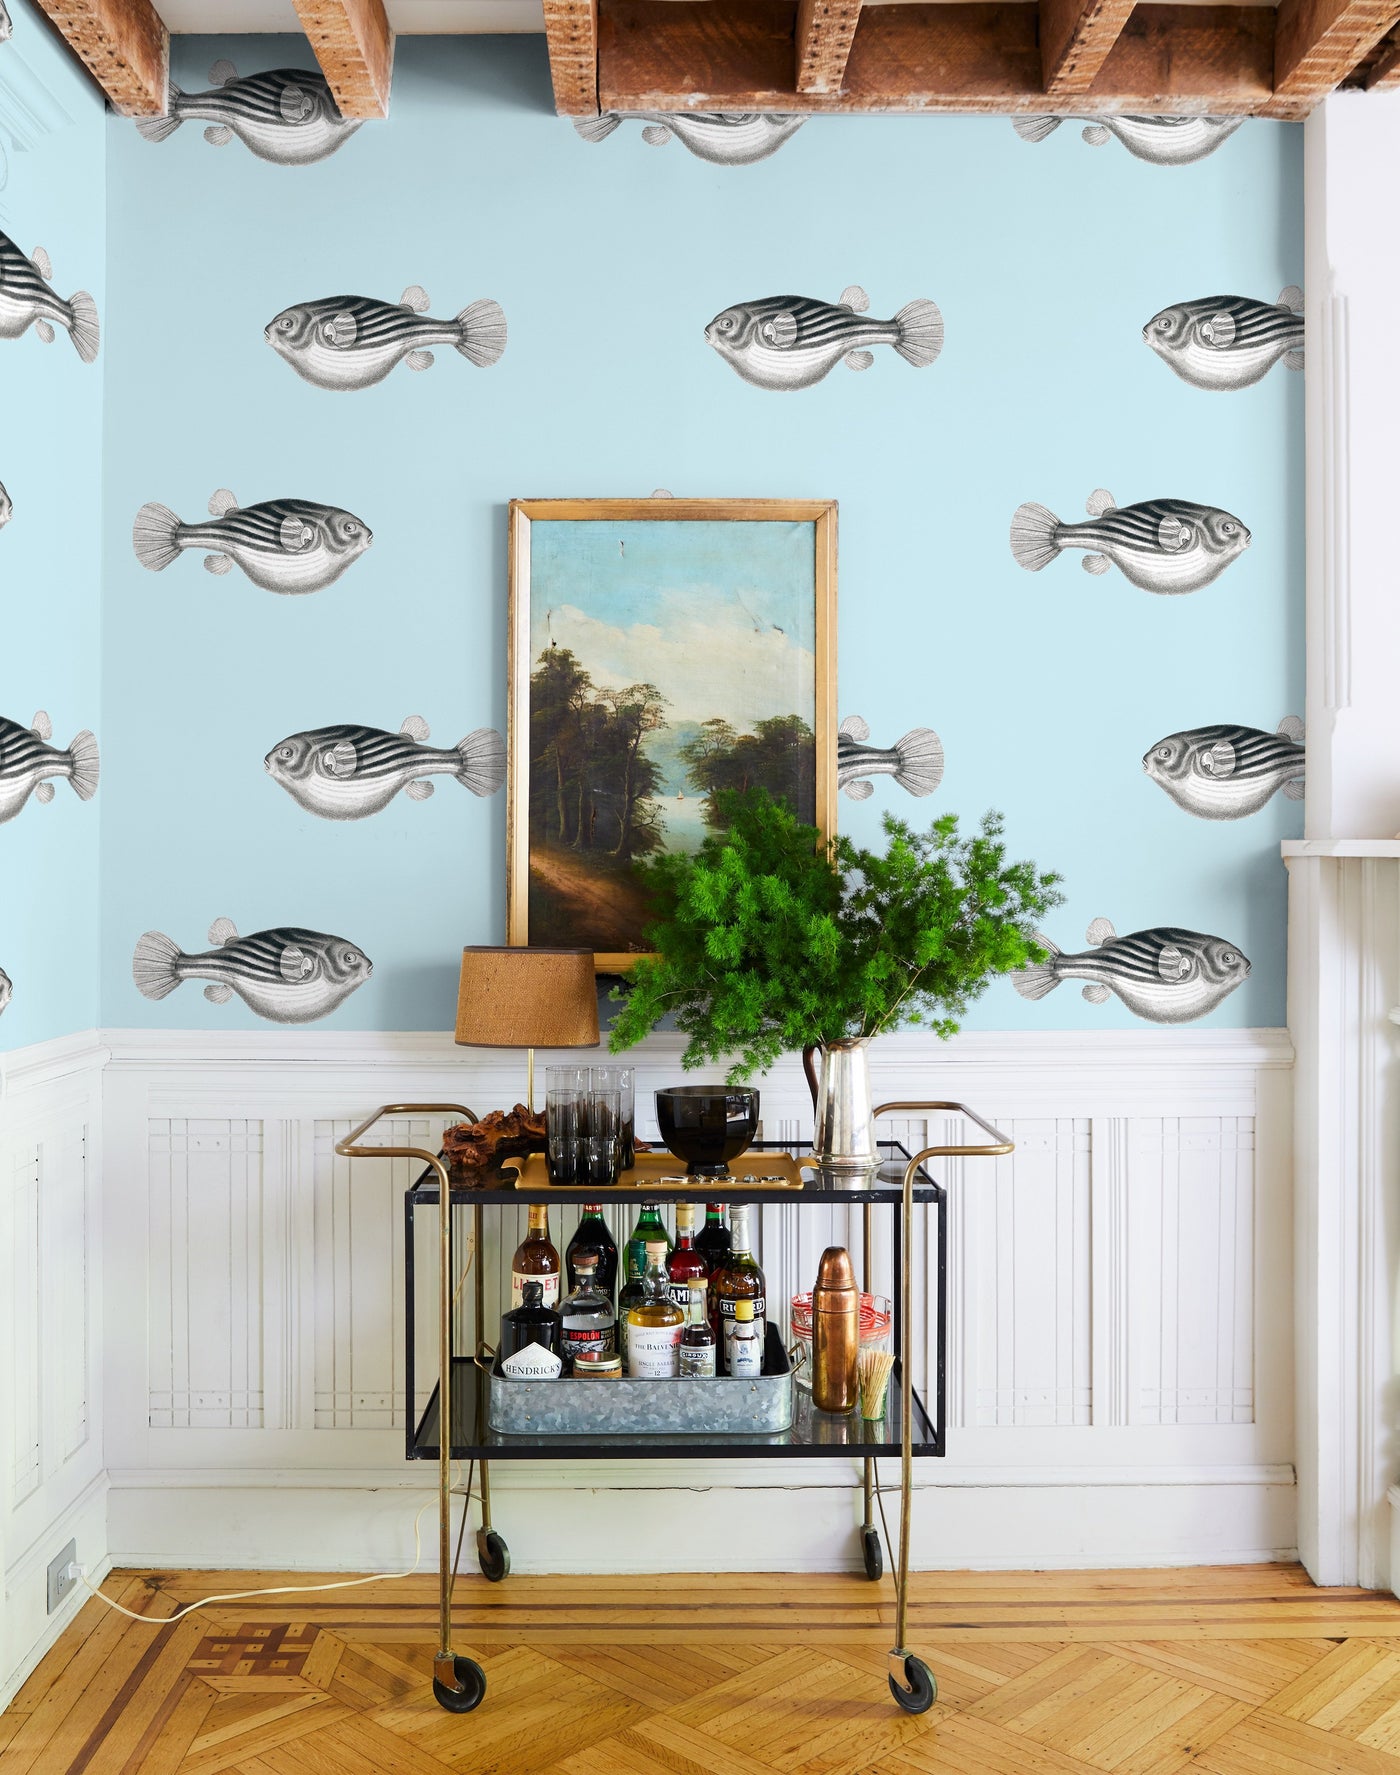 'Blowfish' Wallpaper by Wallshoppe - Sky